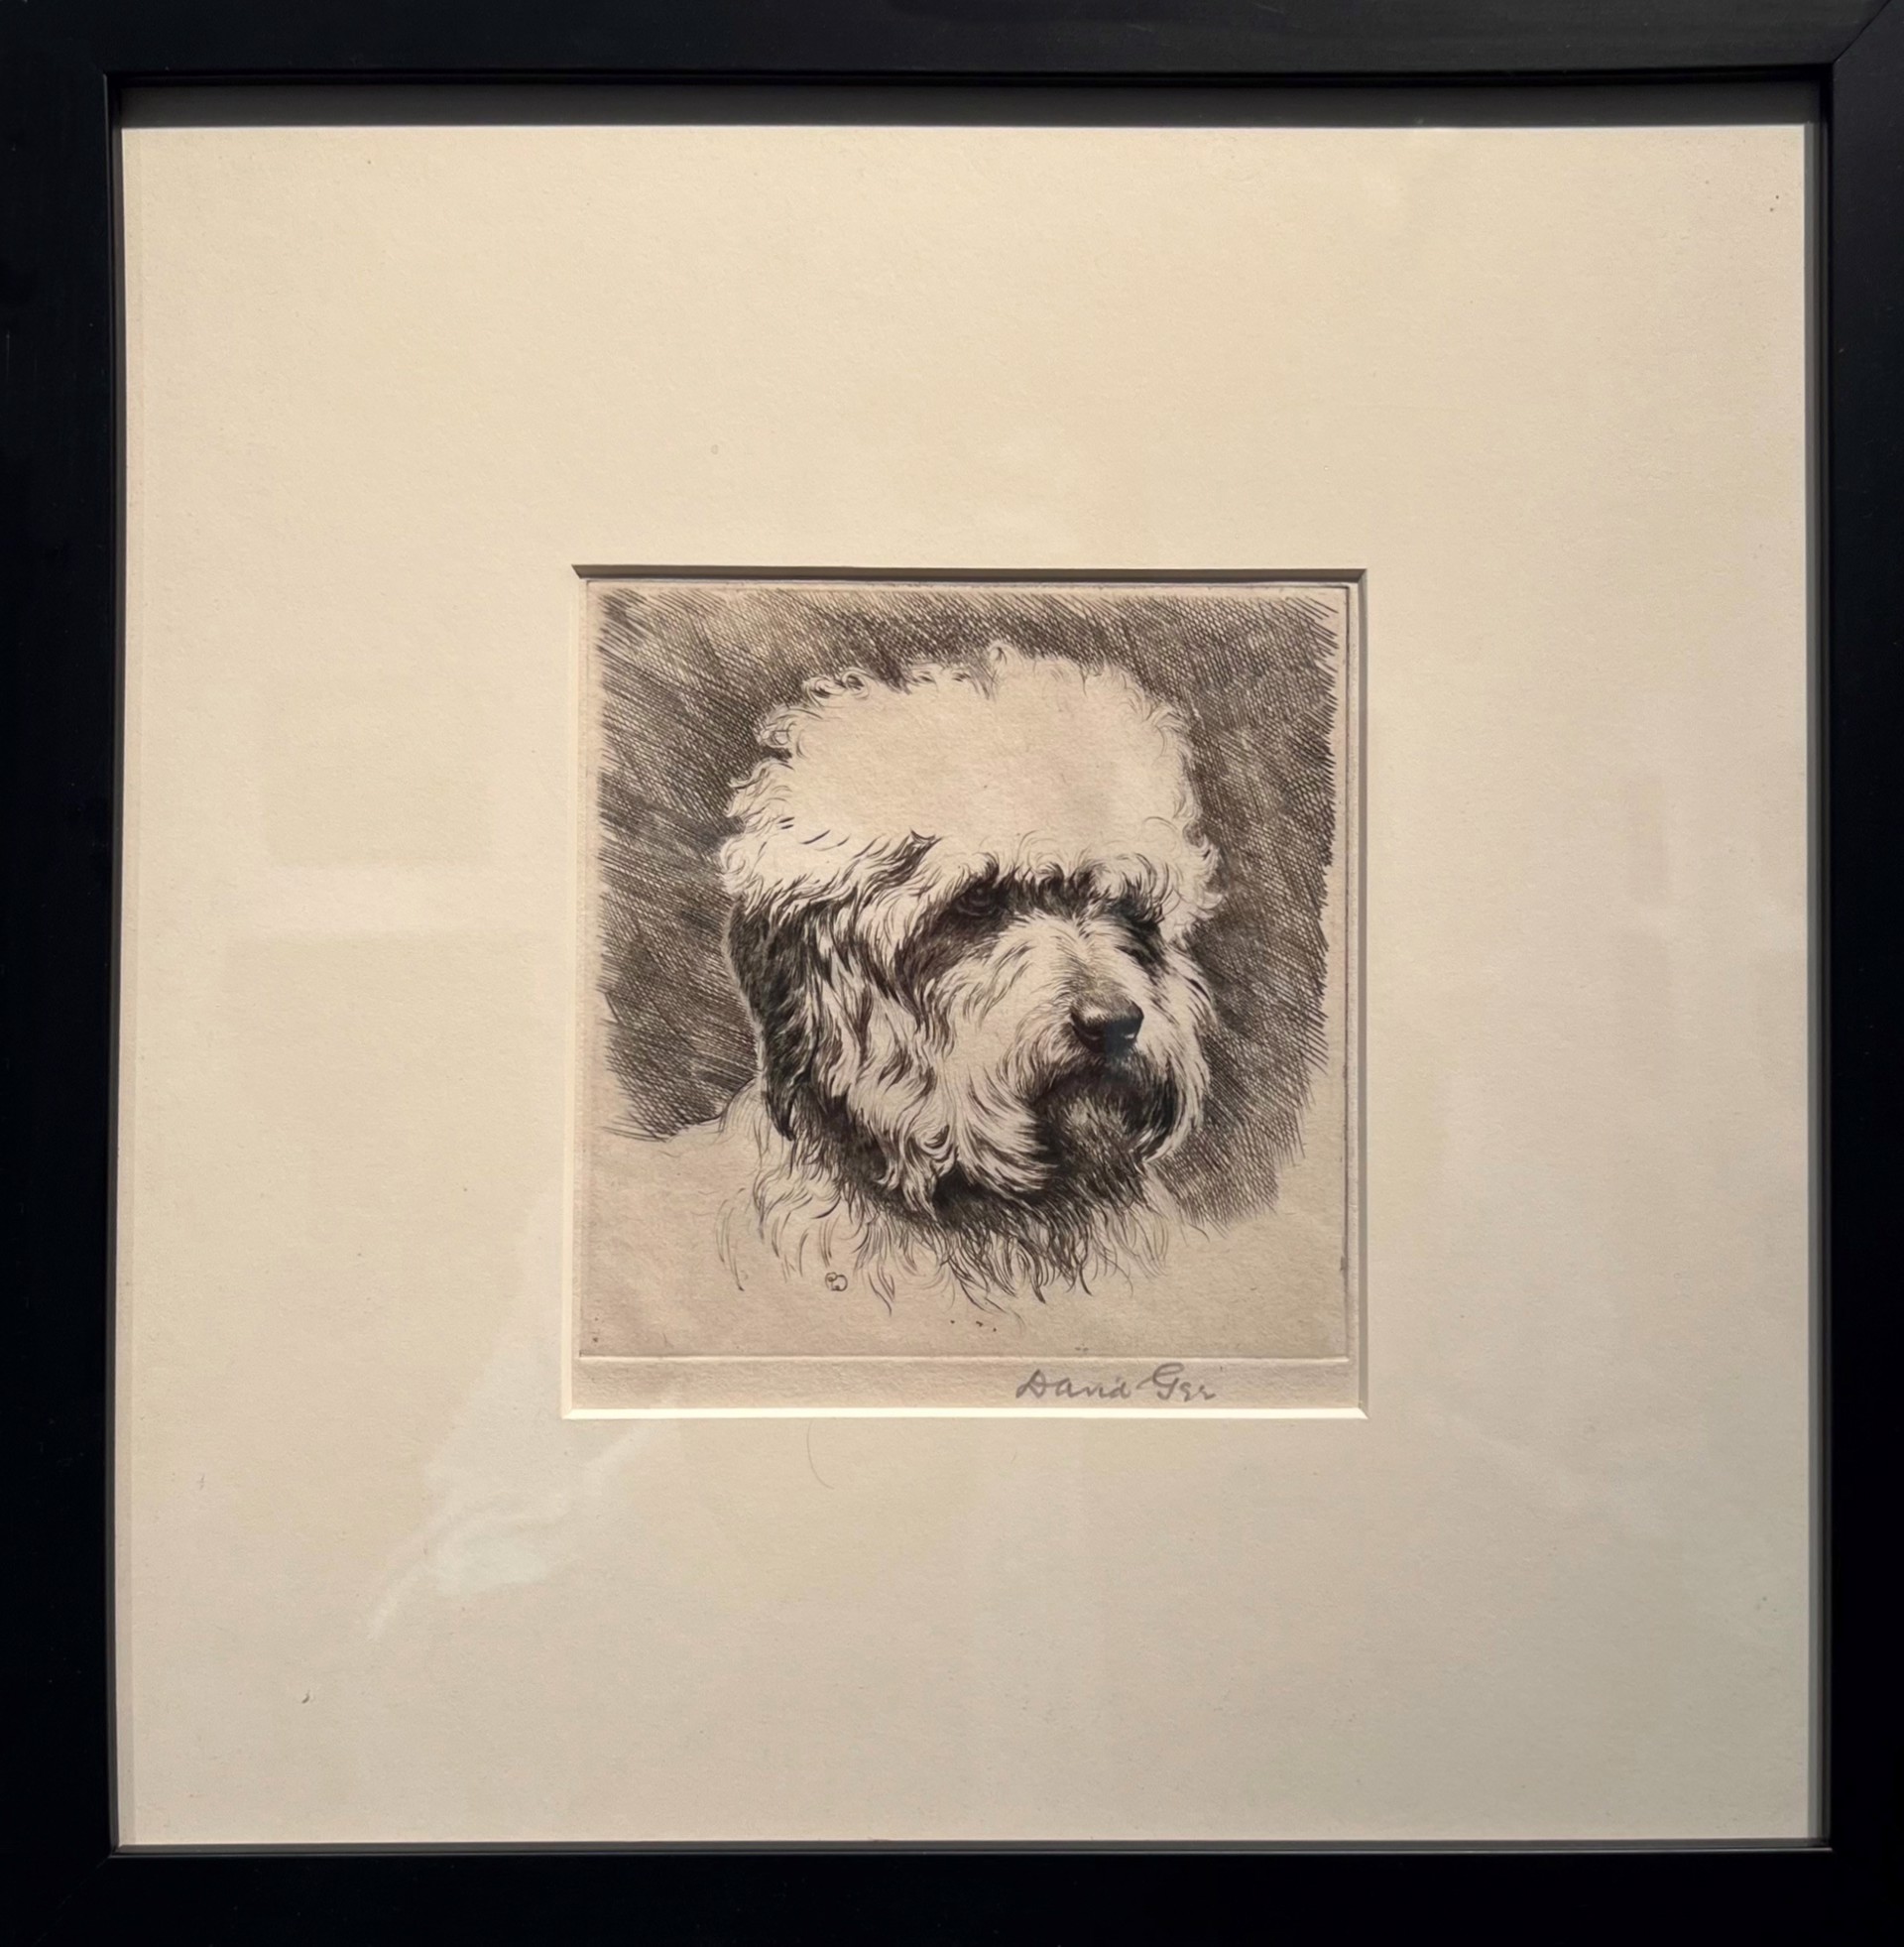 Dandie Dinmont Terrier by David Gee